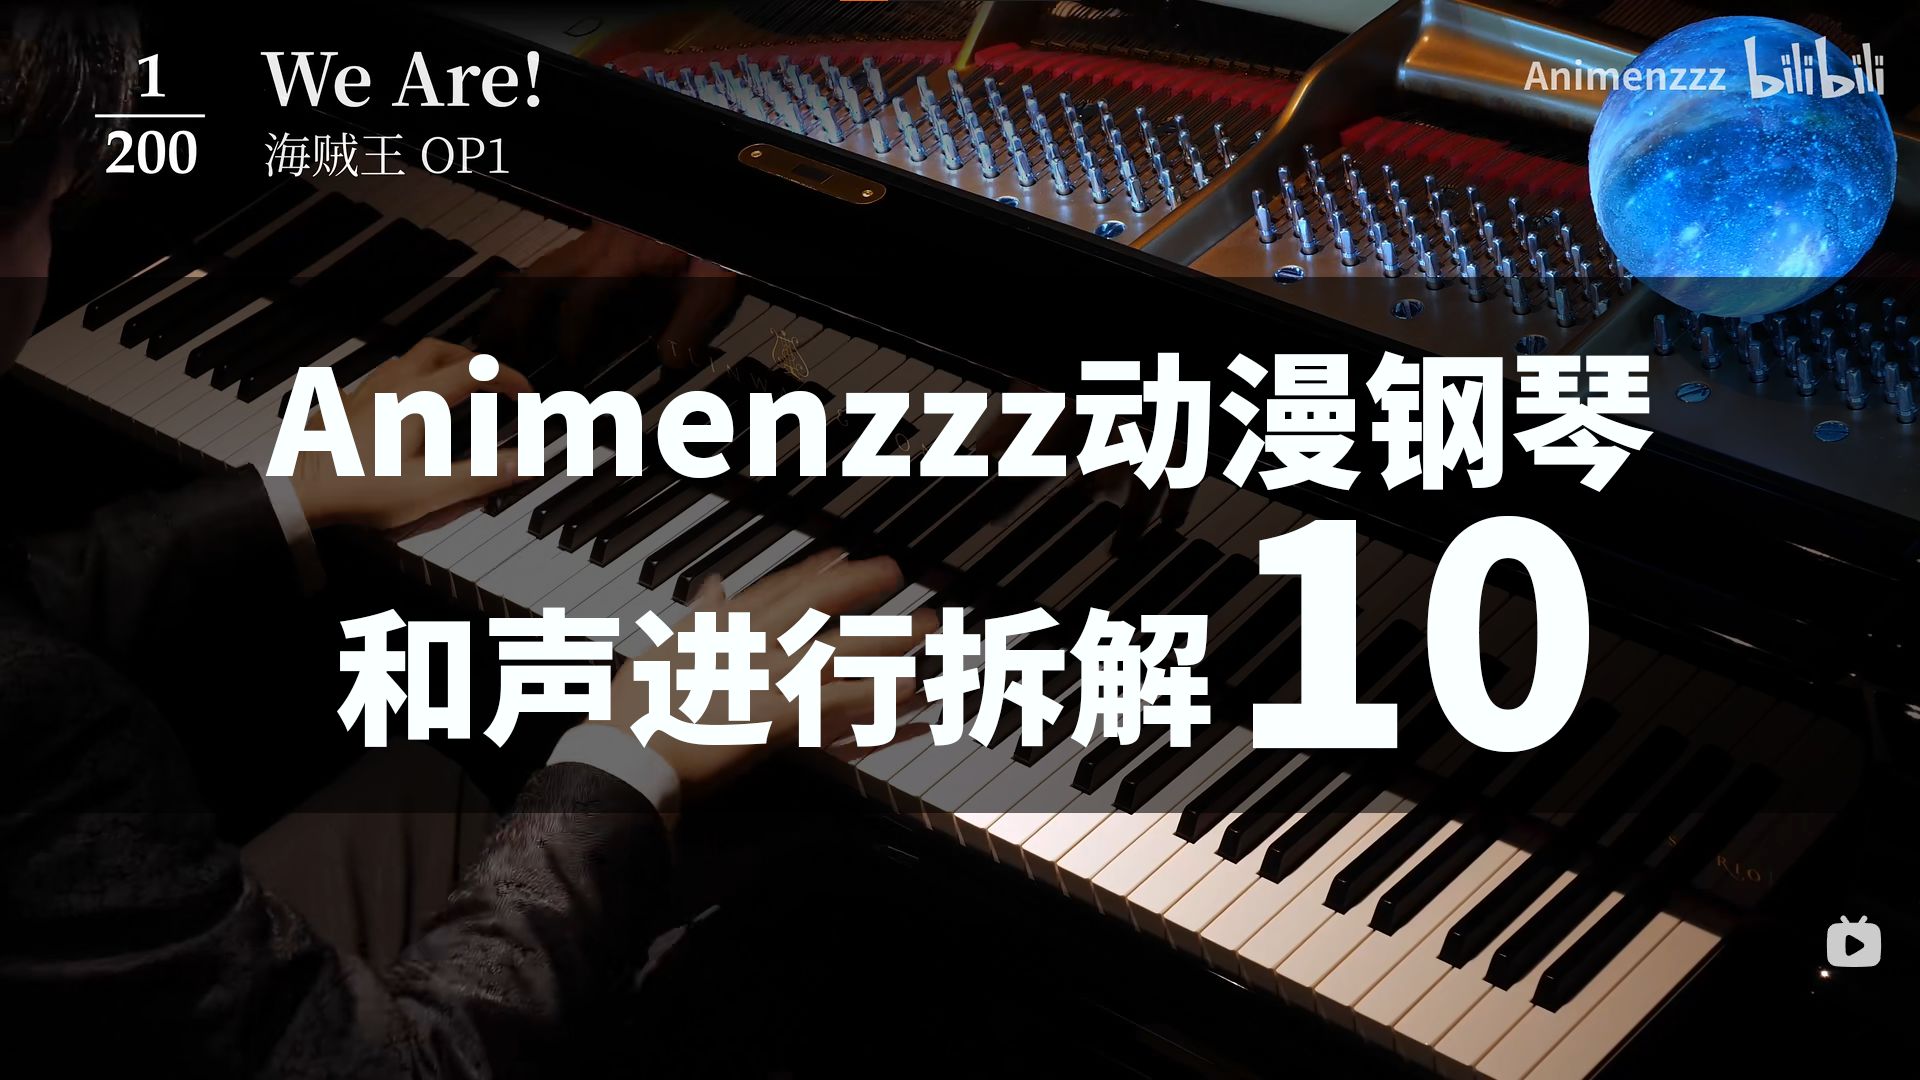 Animenzzz200首动漫钢琴和声进行拆解91-100